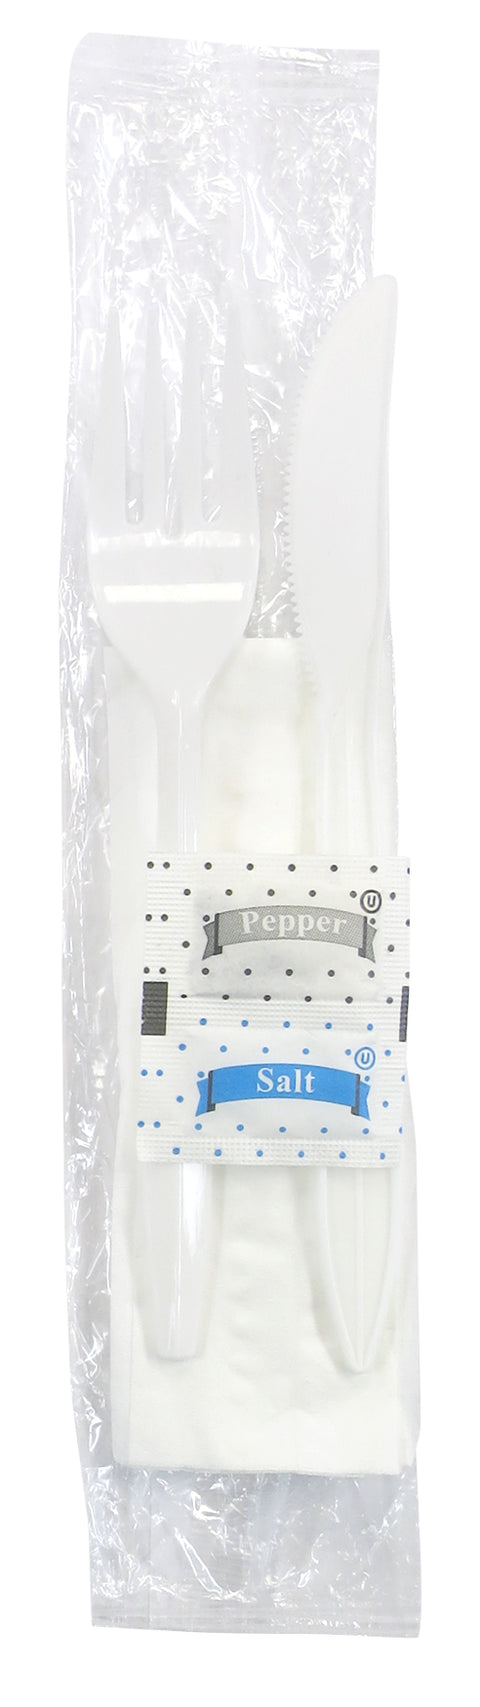 Fork-Knife-Napkin-Salt-Pepper